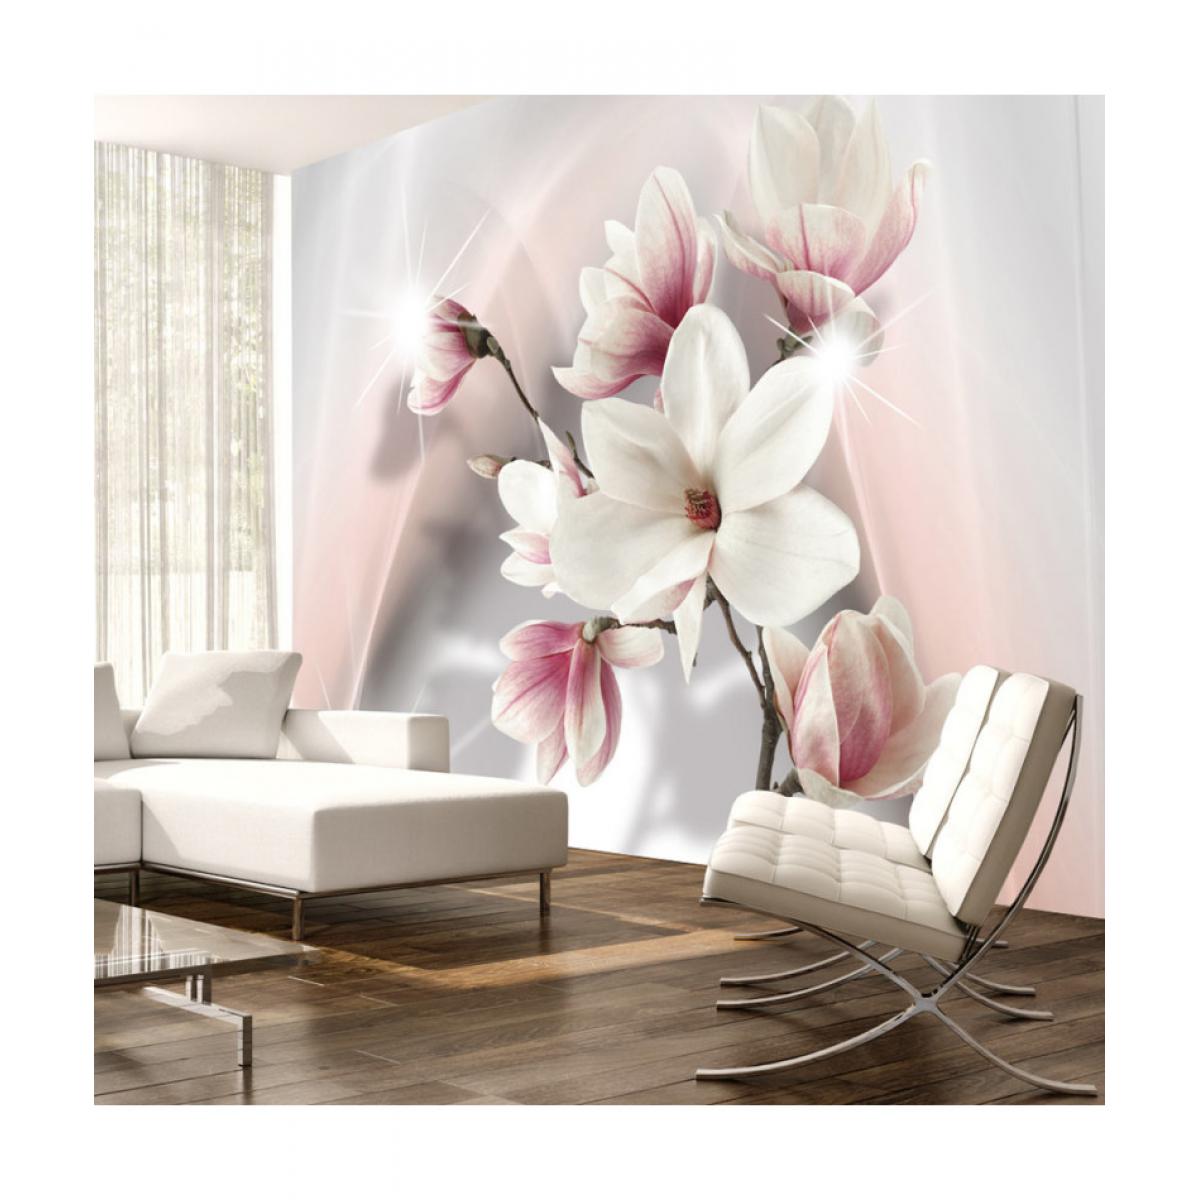 Artgeist - Papier peint - White magnolias 250x175 - Papier peint